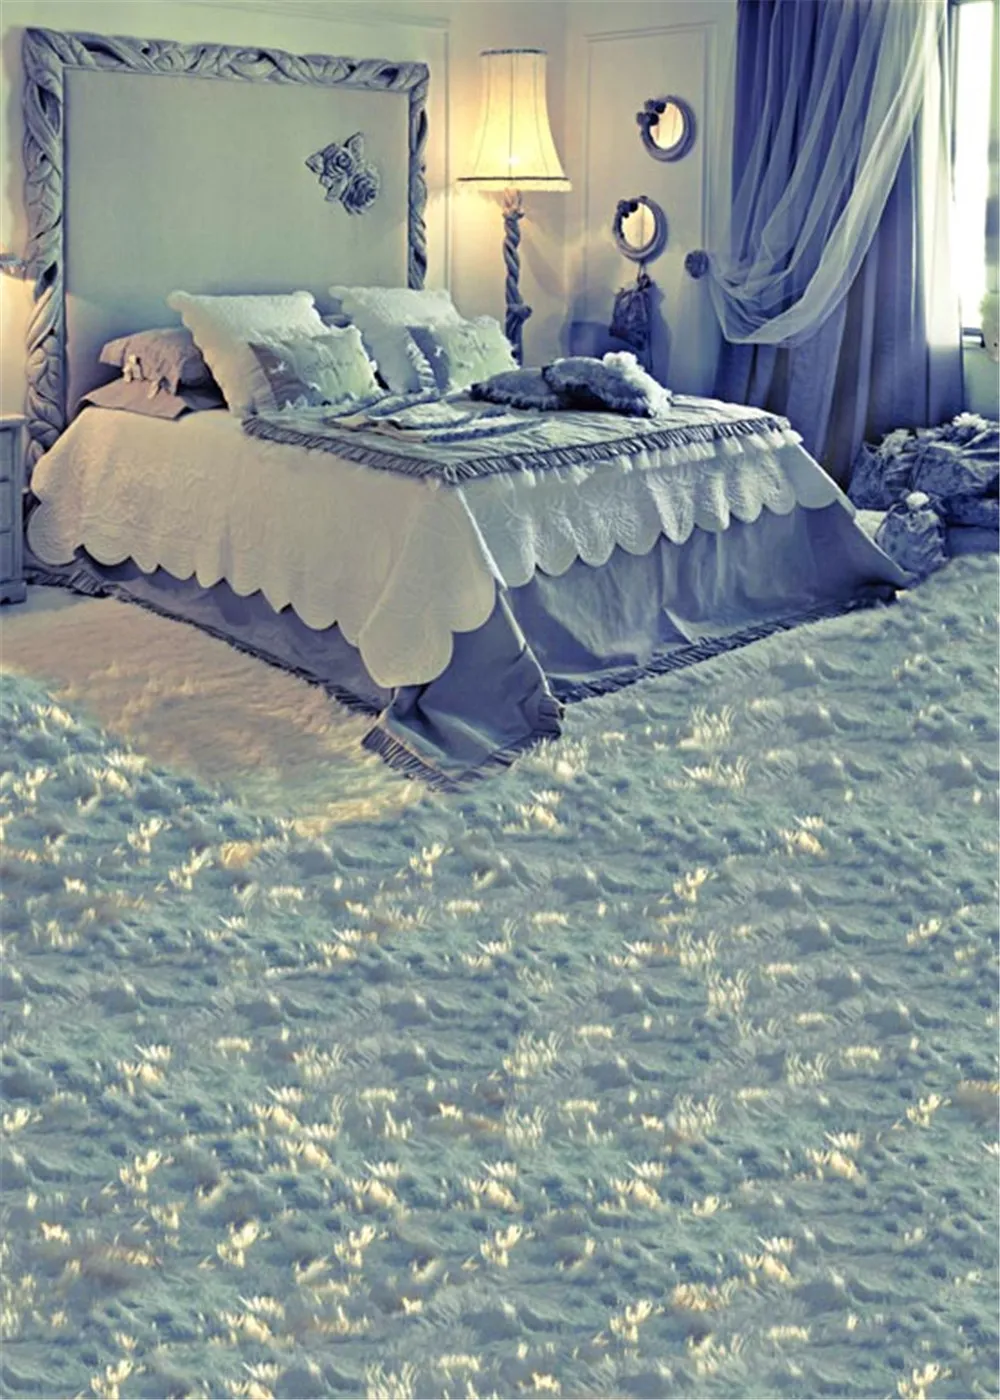 실내 아기 방 배경 사진 라이트 블루 공주 스타일 침대 부드러운 카펫 비닐 클로스 사진 배경 소녀들을위한